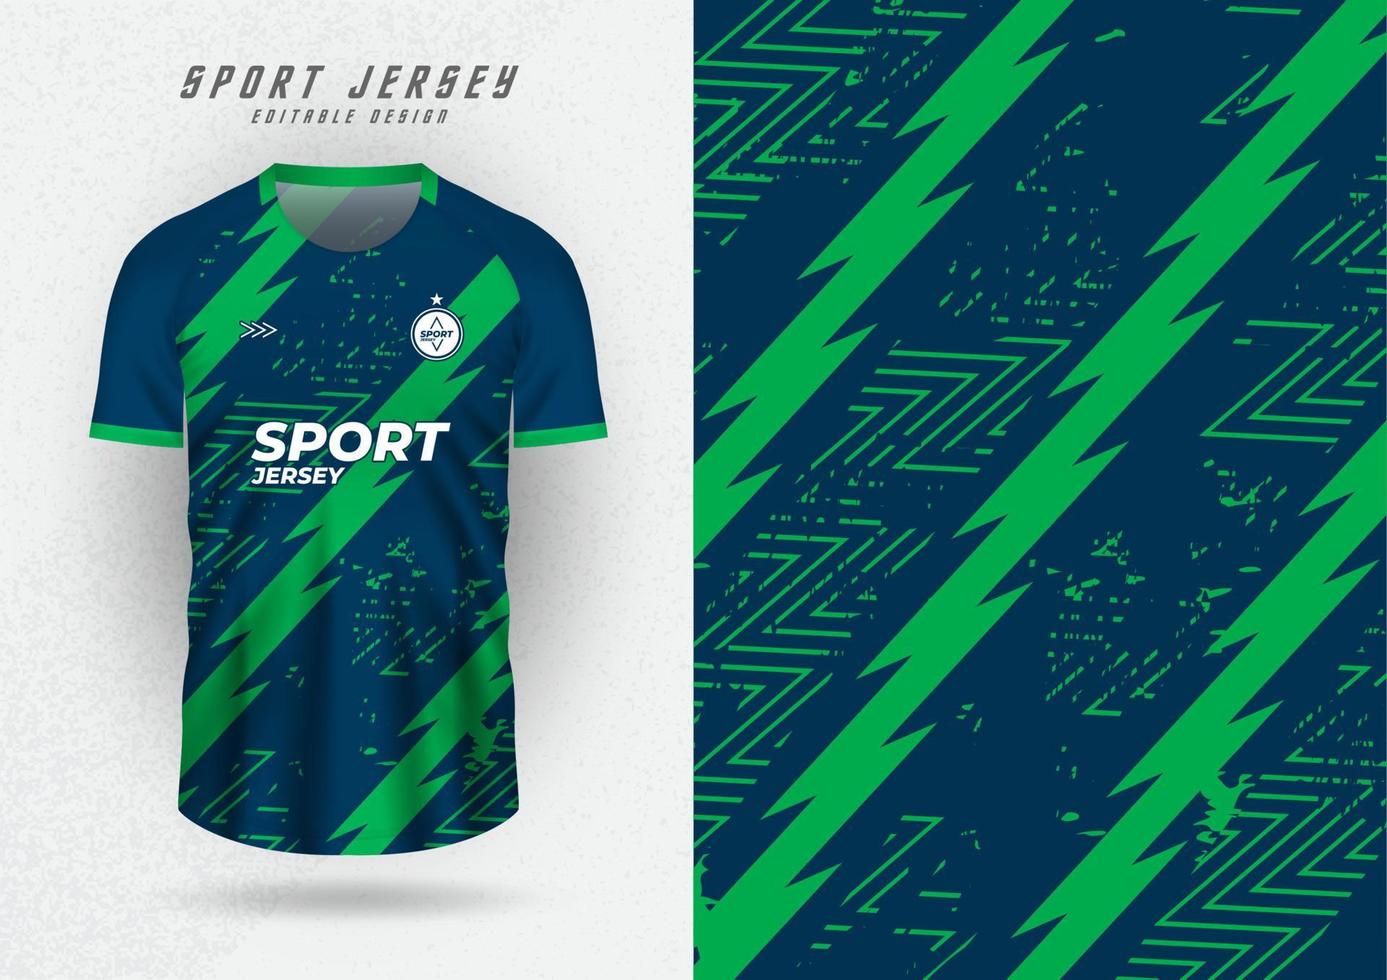 achtergrond voor sport- Jersey, voetbal Jersey, rennen Jersey, racing Jersey, groen streep bliksem patroon. vector